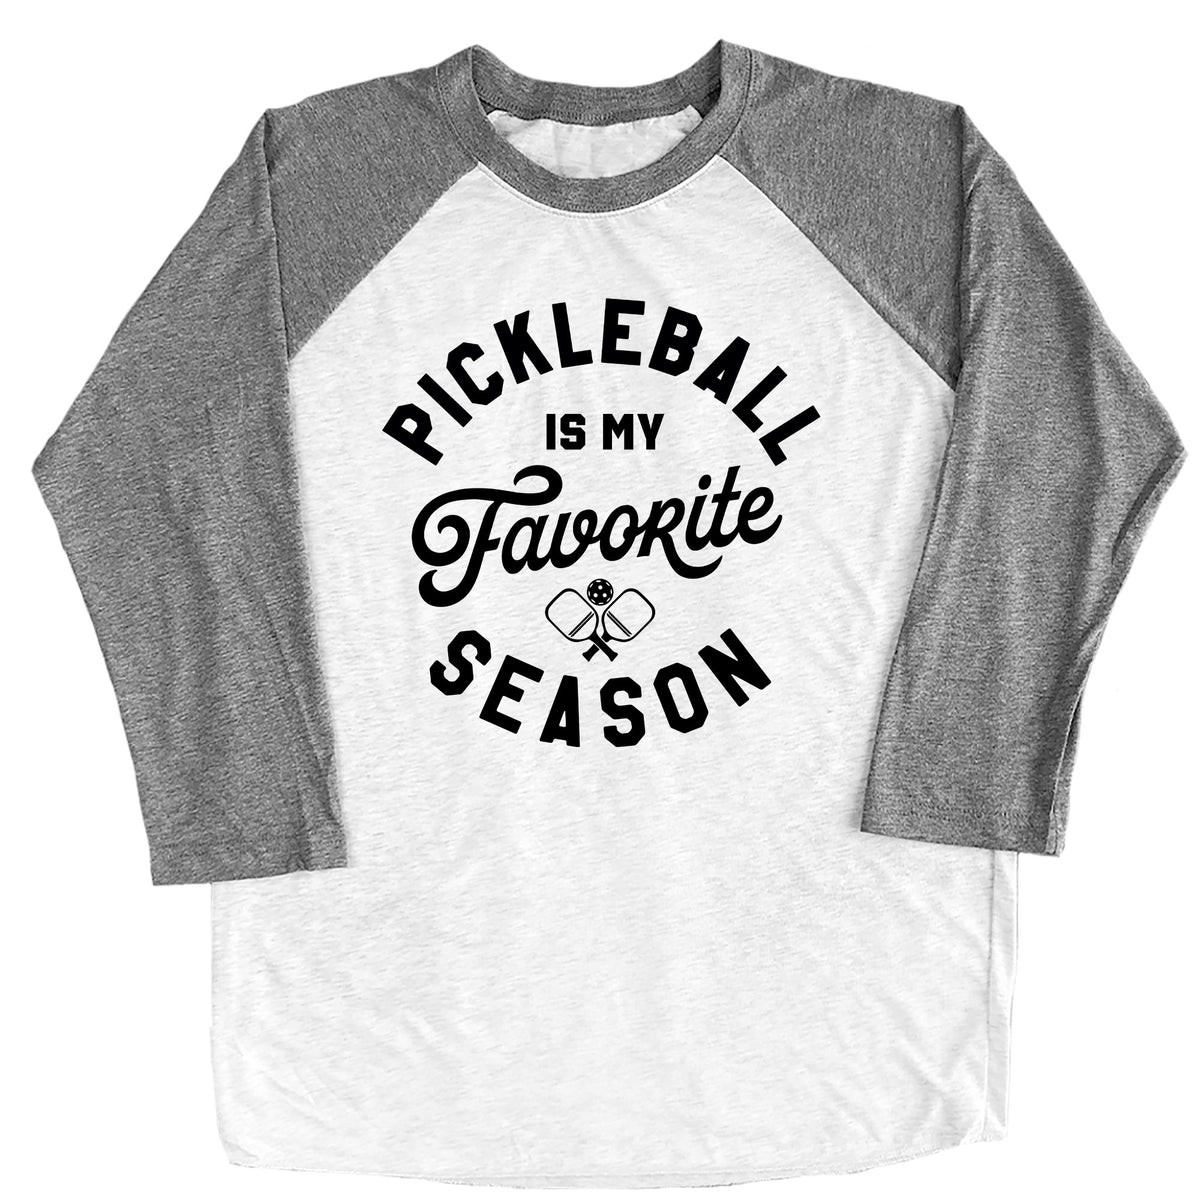 Pickleball is My Favorite Season Raglan